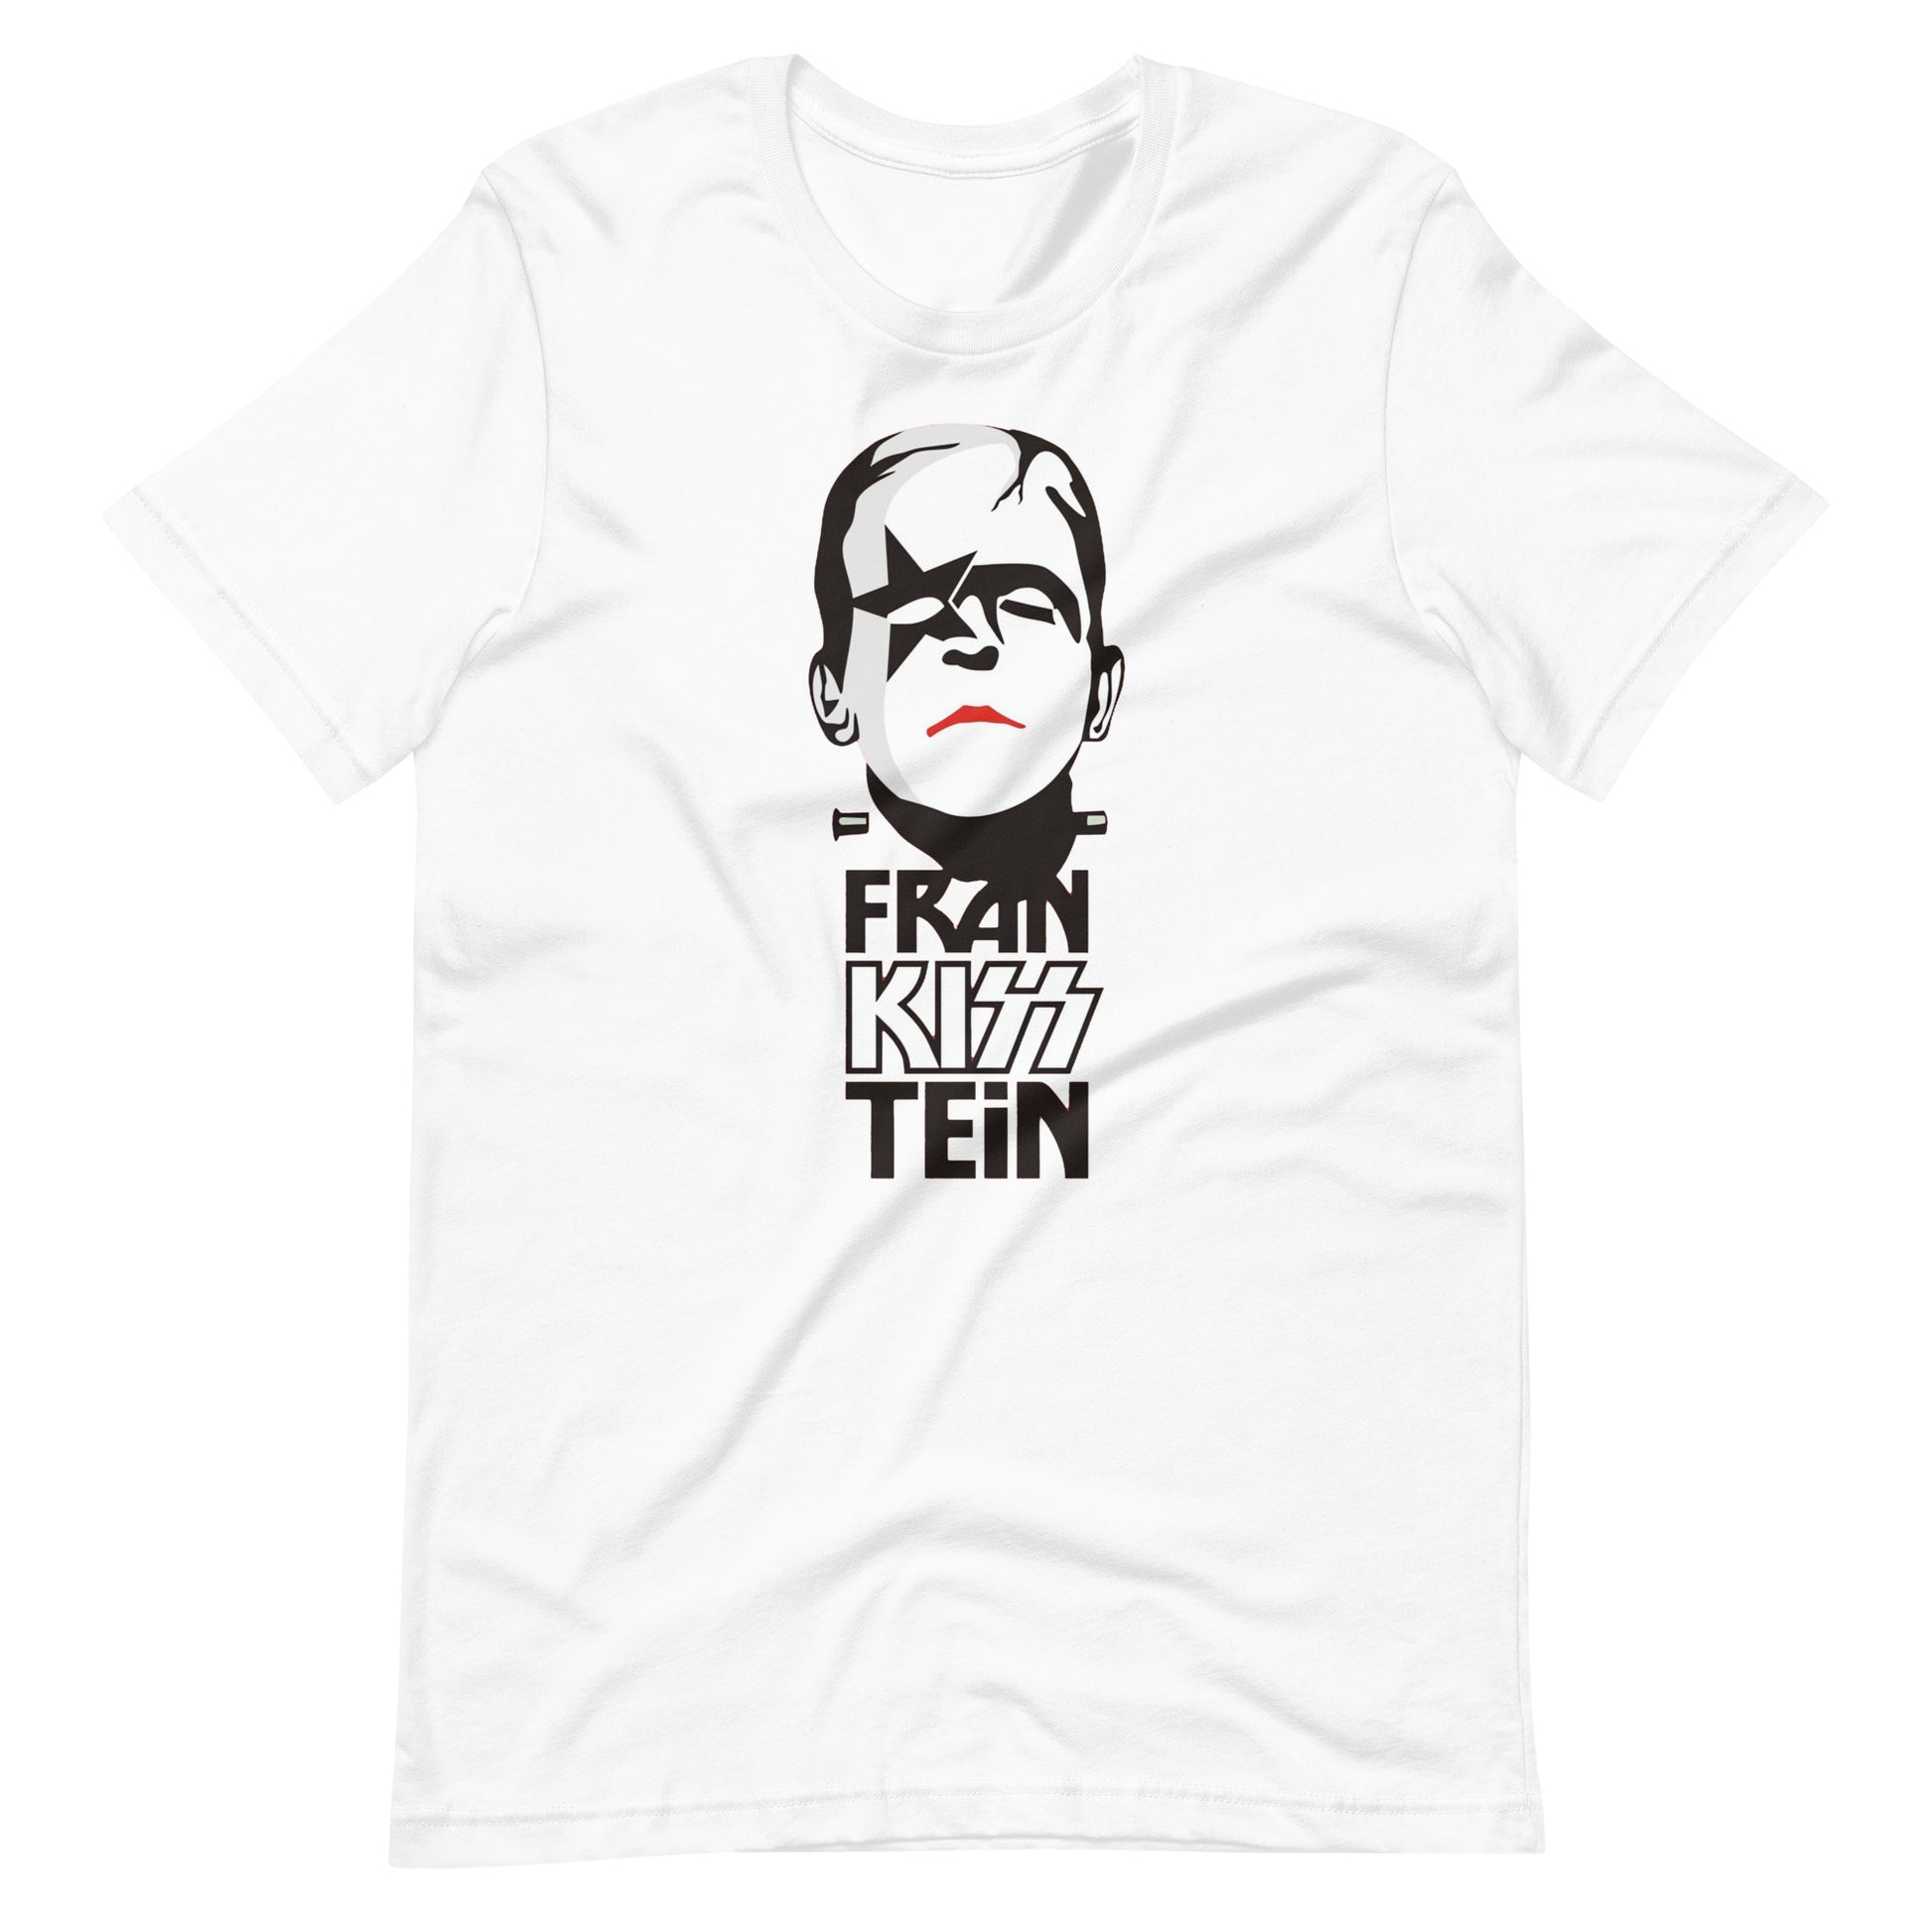 Camiseta Fran Kiss Tein, Disponible en la mejor tienda online para comprar tu merch favorita, la mejor Calidad, compra Ahora en Superstar! 